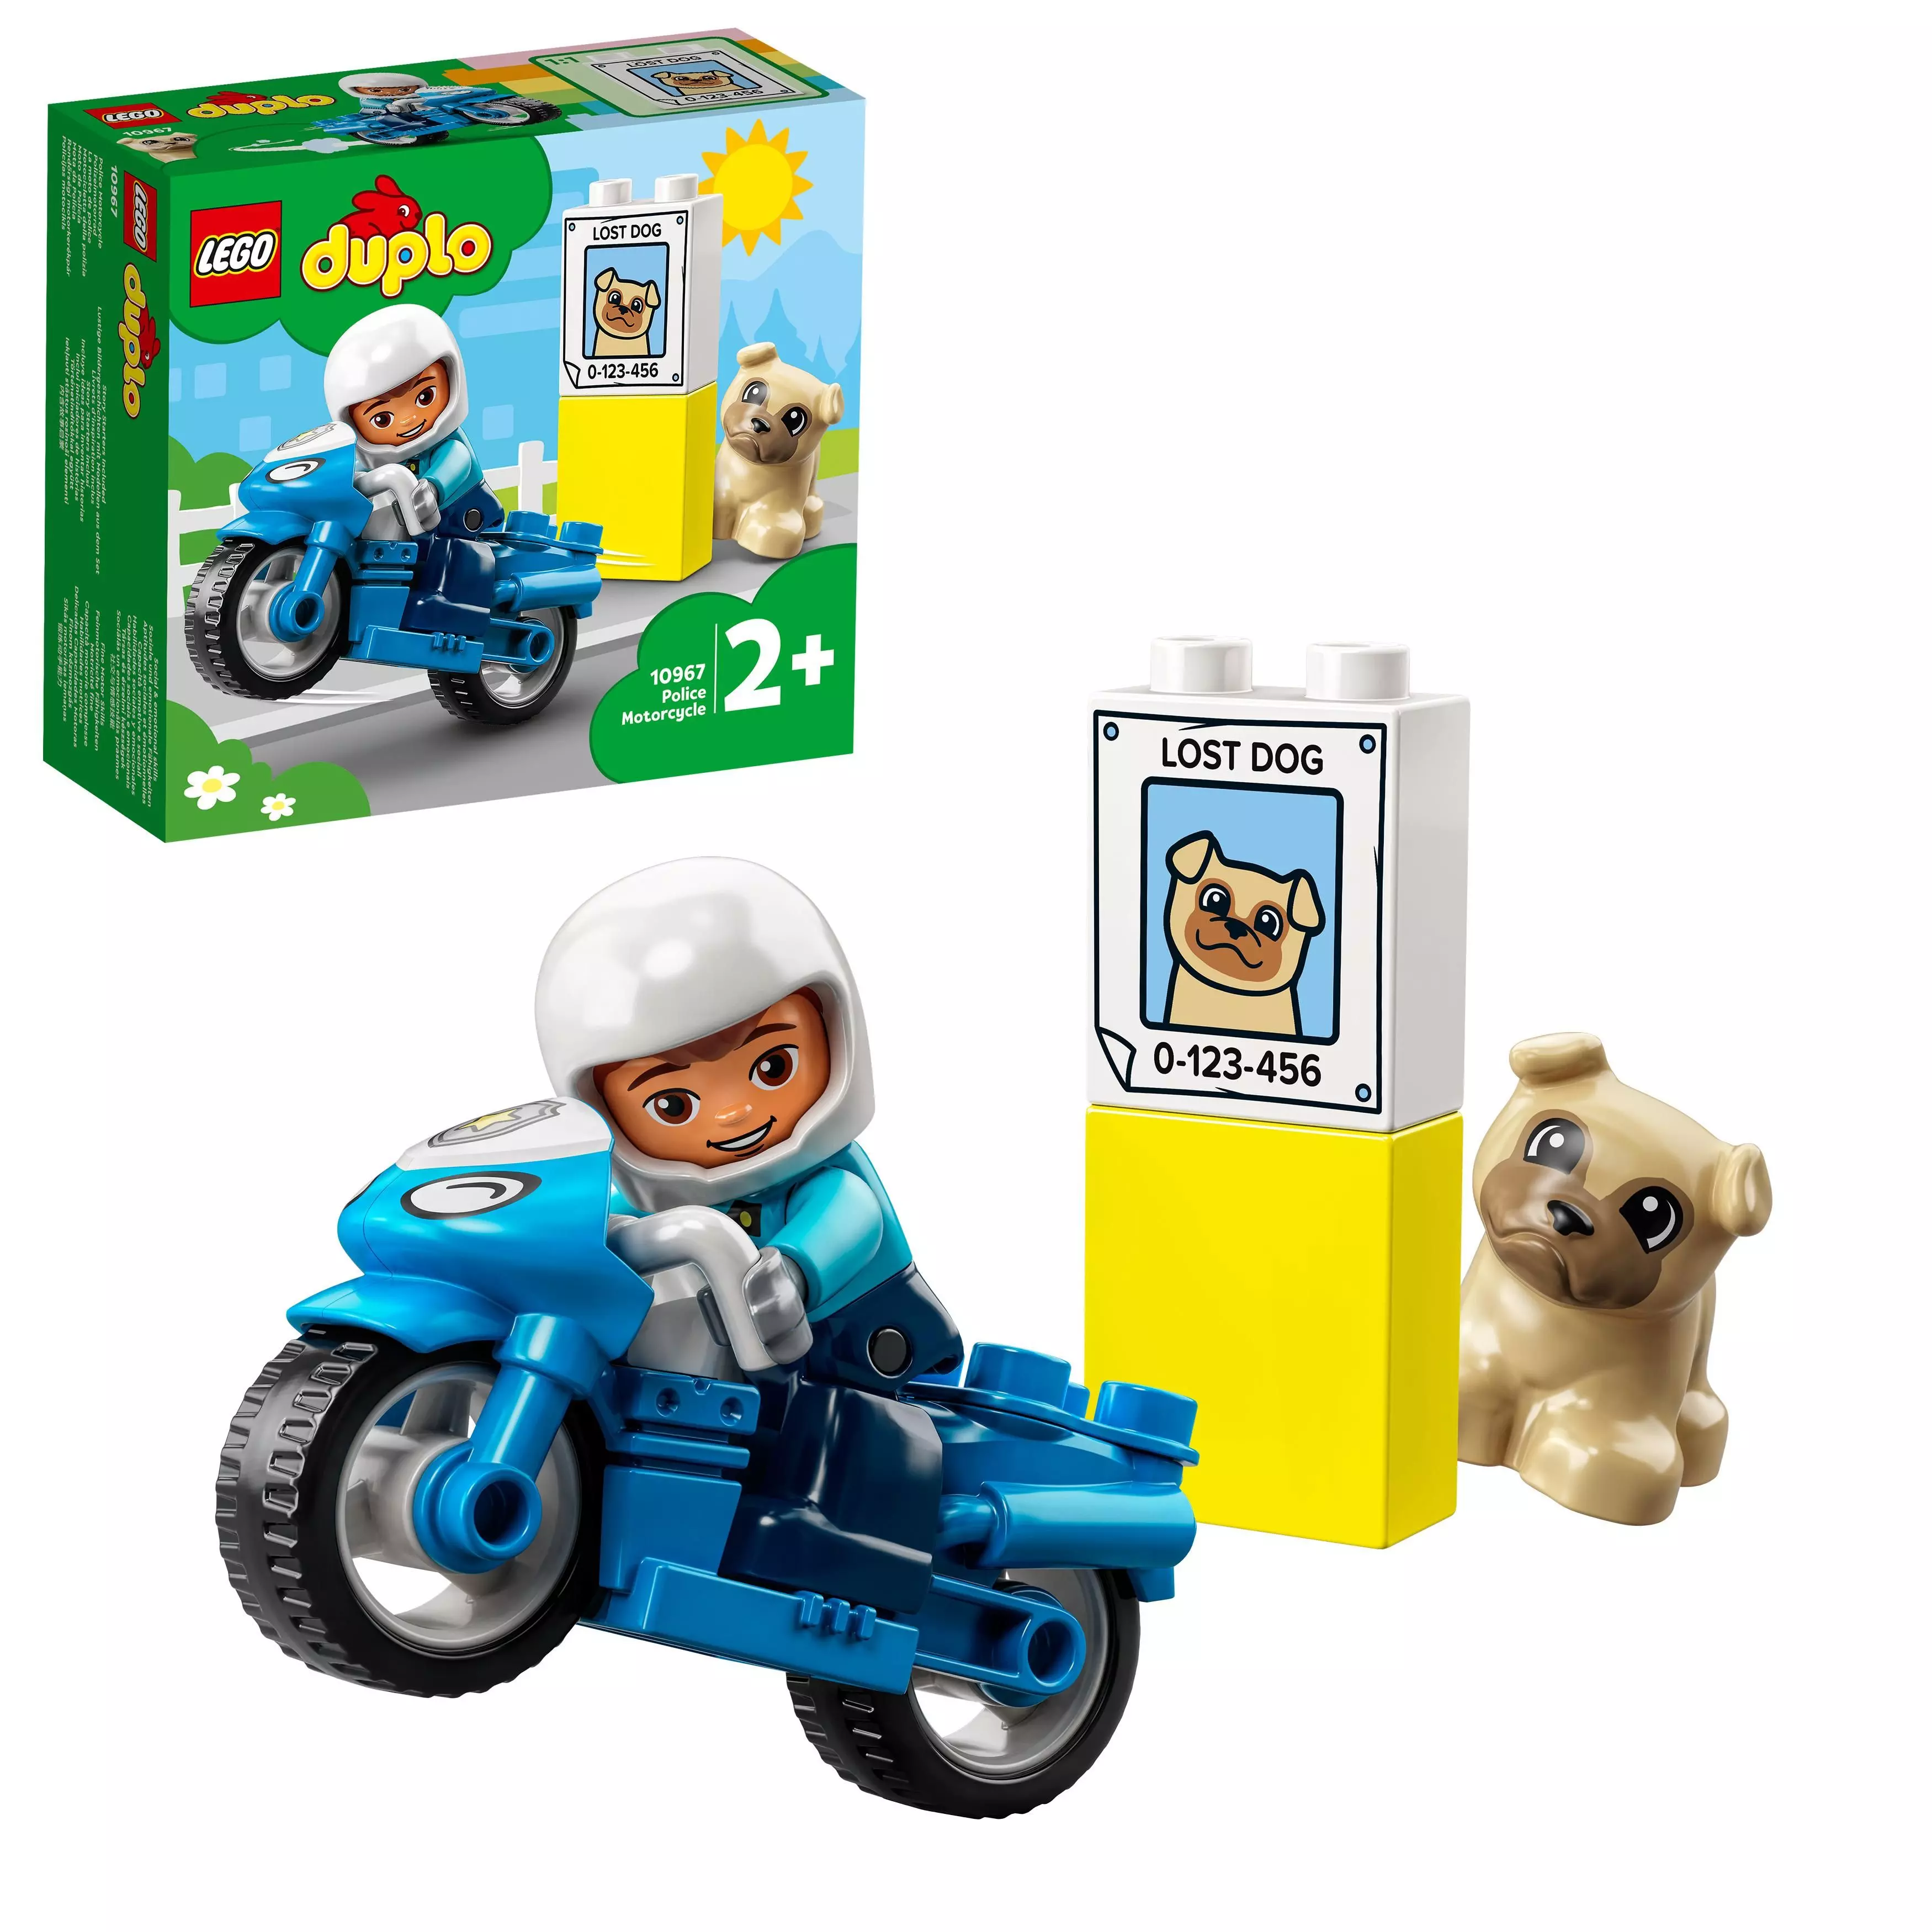 Lego Duplo Poliisimoottoripyörä 10967